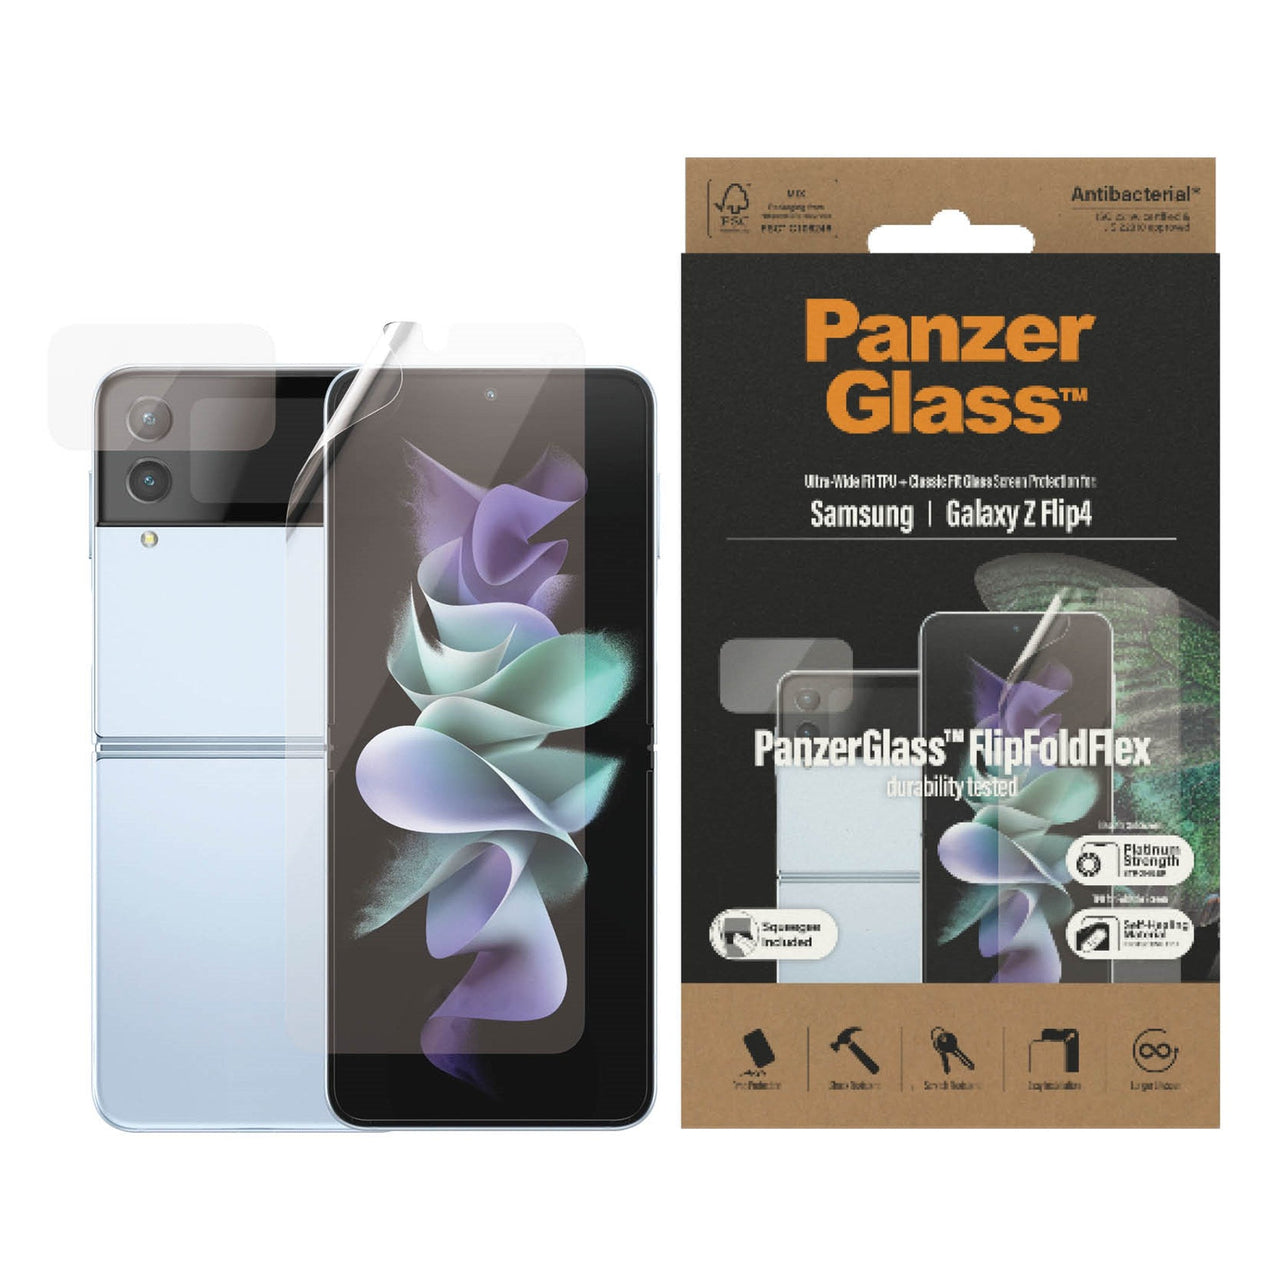 PanzerGlass Samsung Galaxy Z Flip4 5G (6.7) TPU Screen Protector